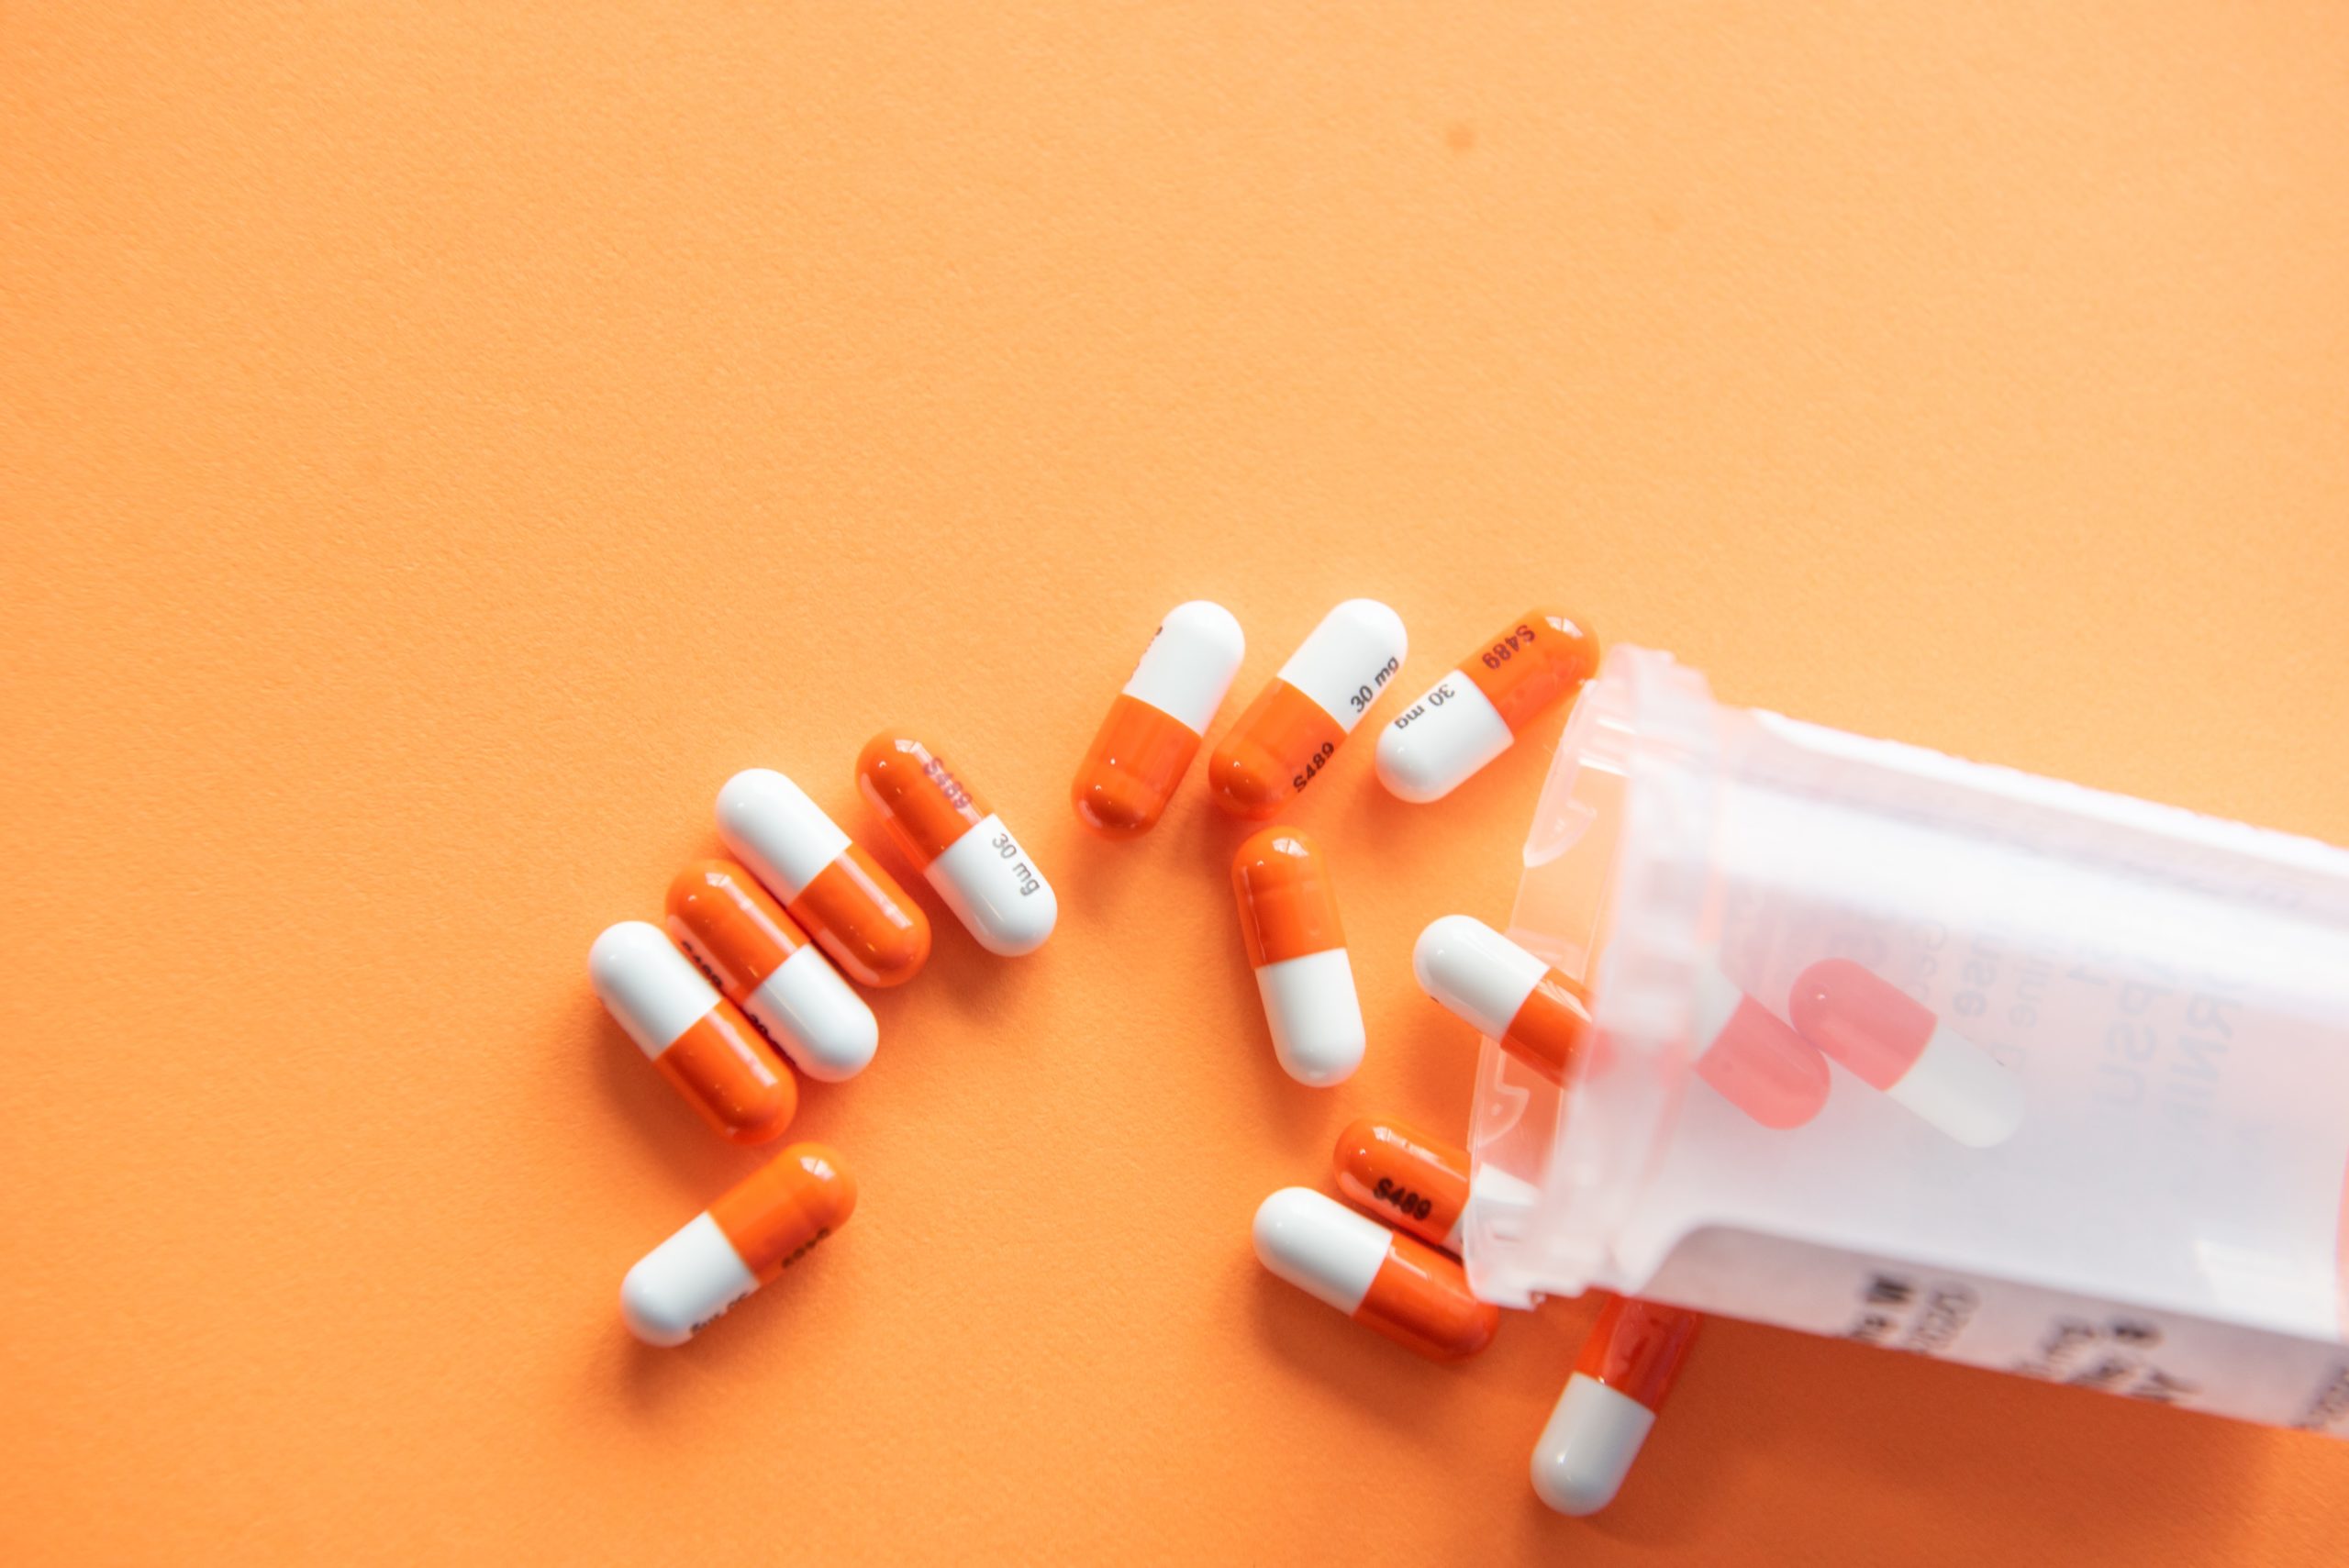 Despite Number of Prescription Drug-Related Crimes in Florida, Number of Prescription Drug-Related Deaths is Down